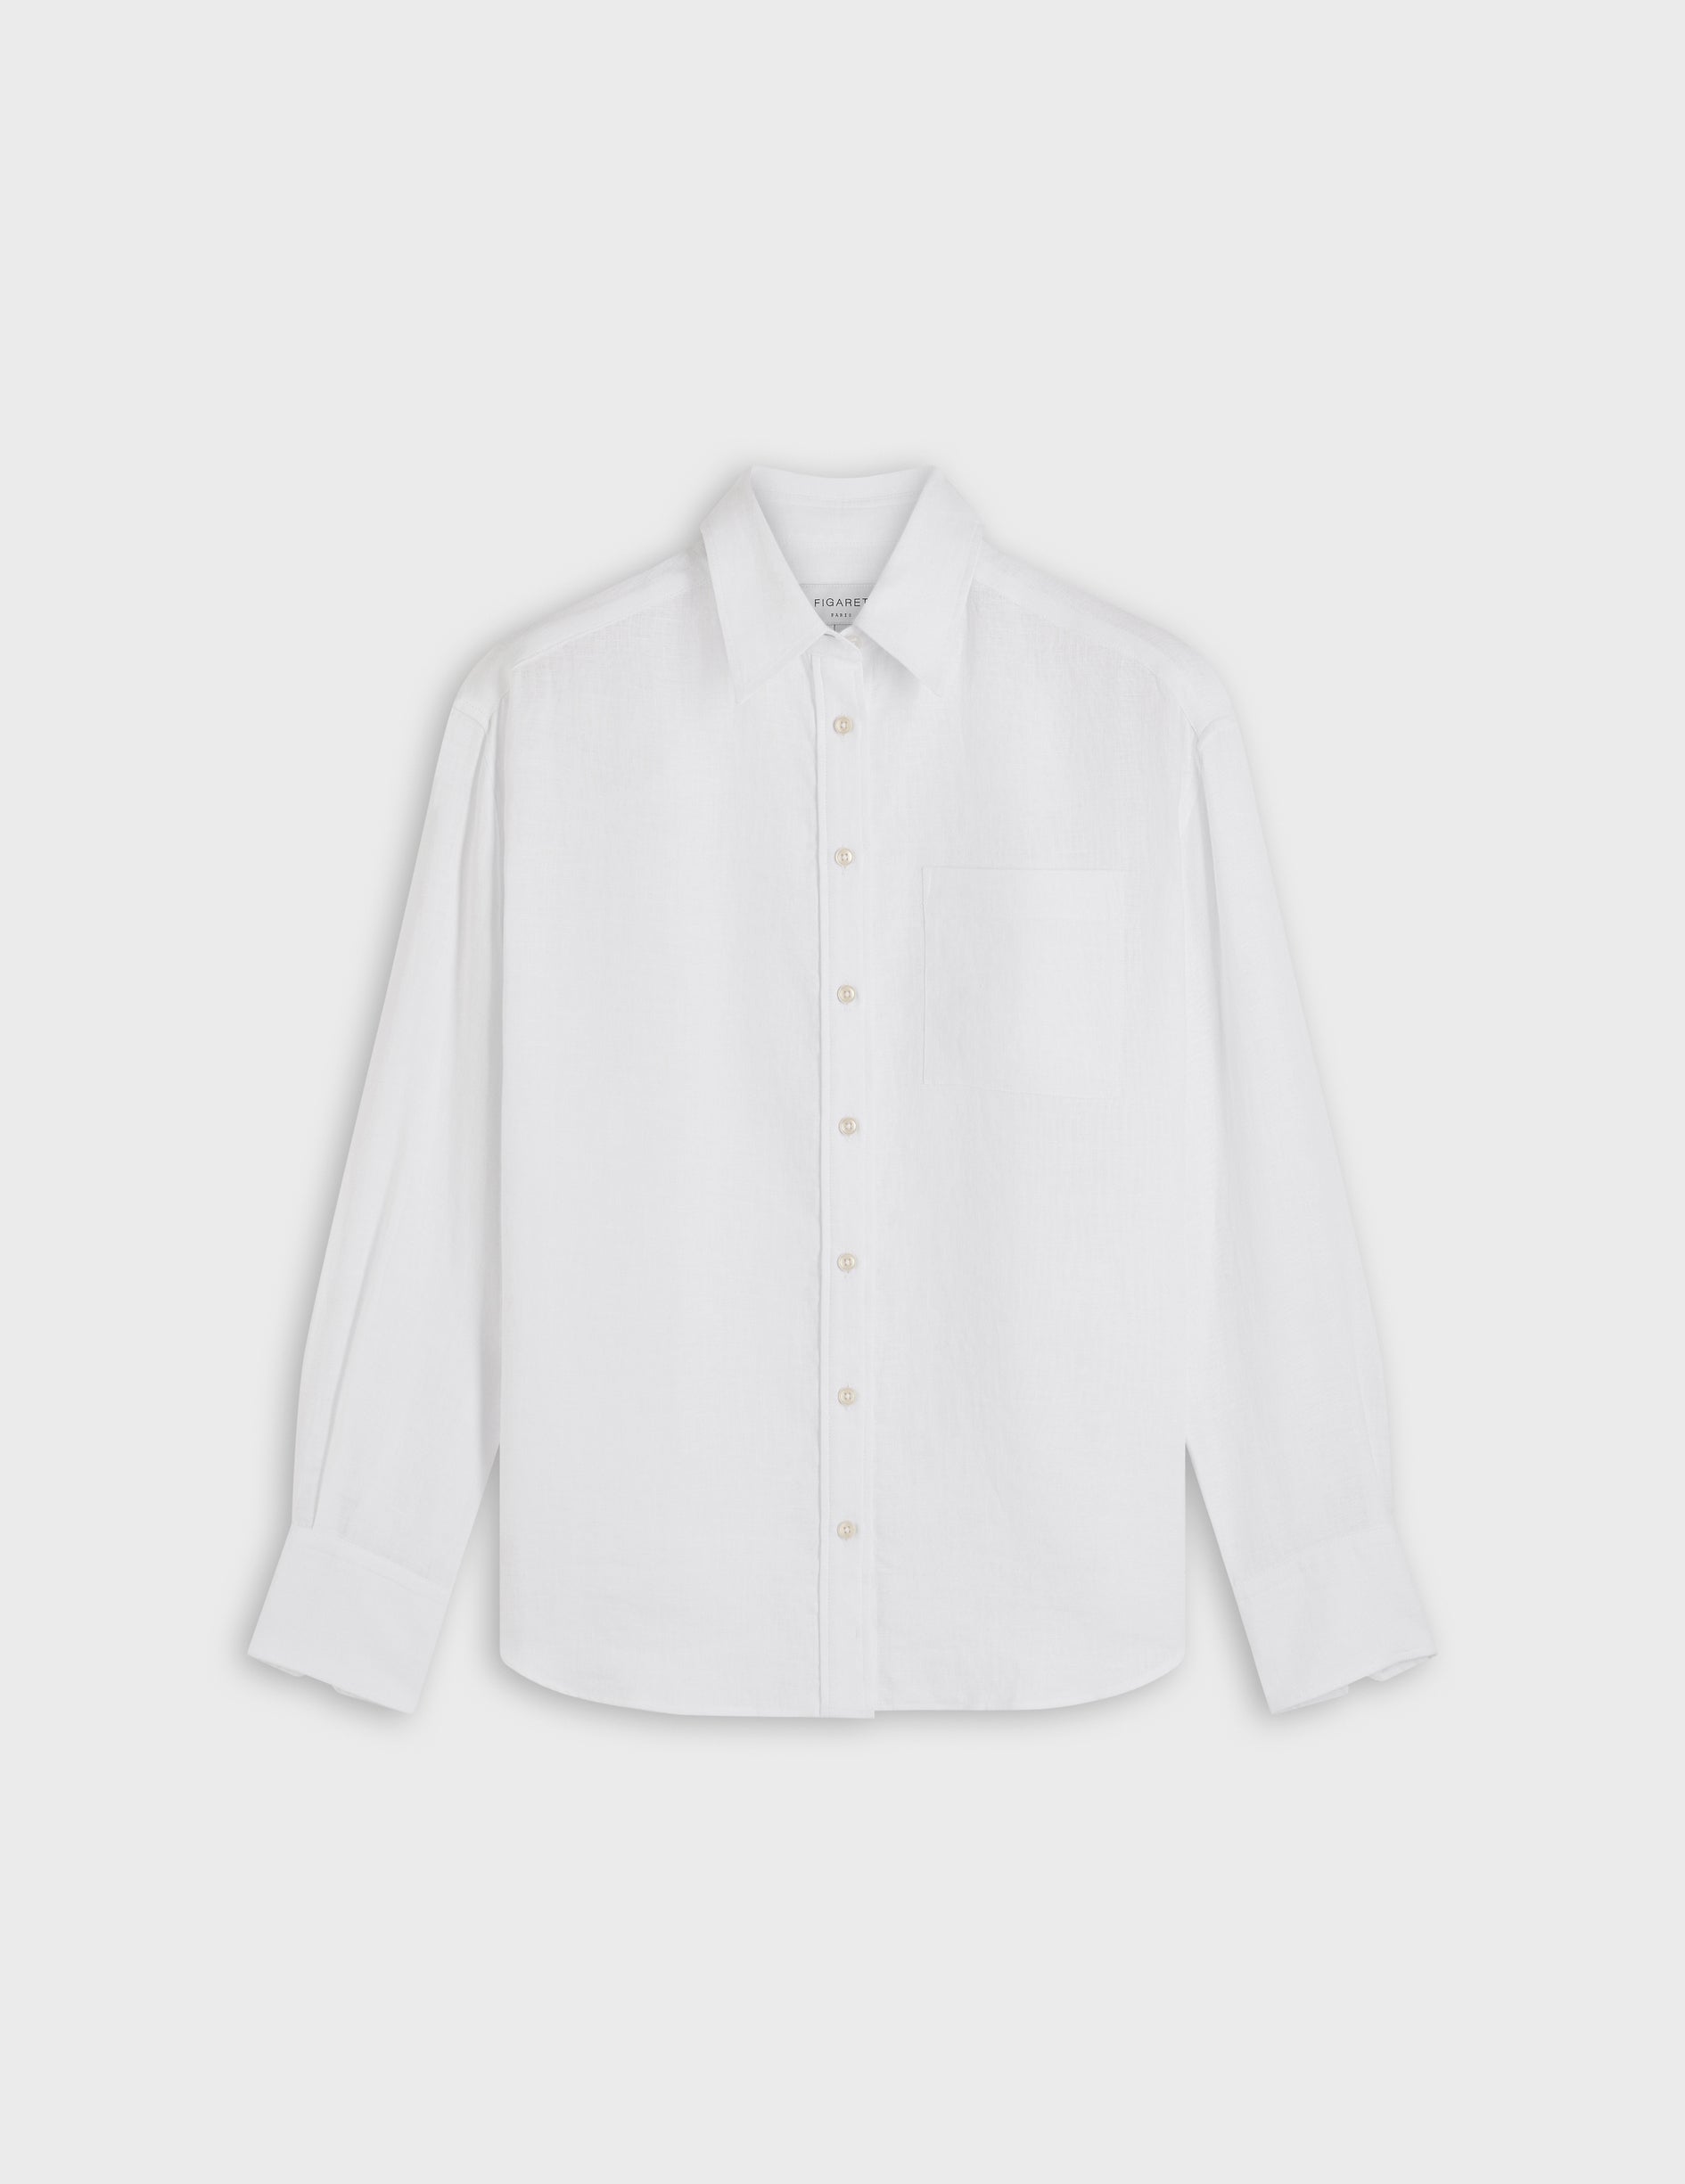 Charlotte white linen shirt